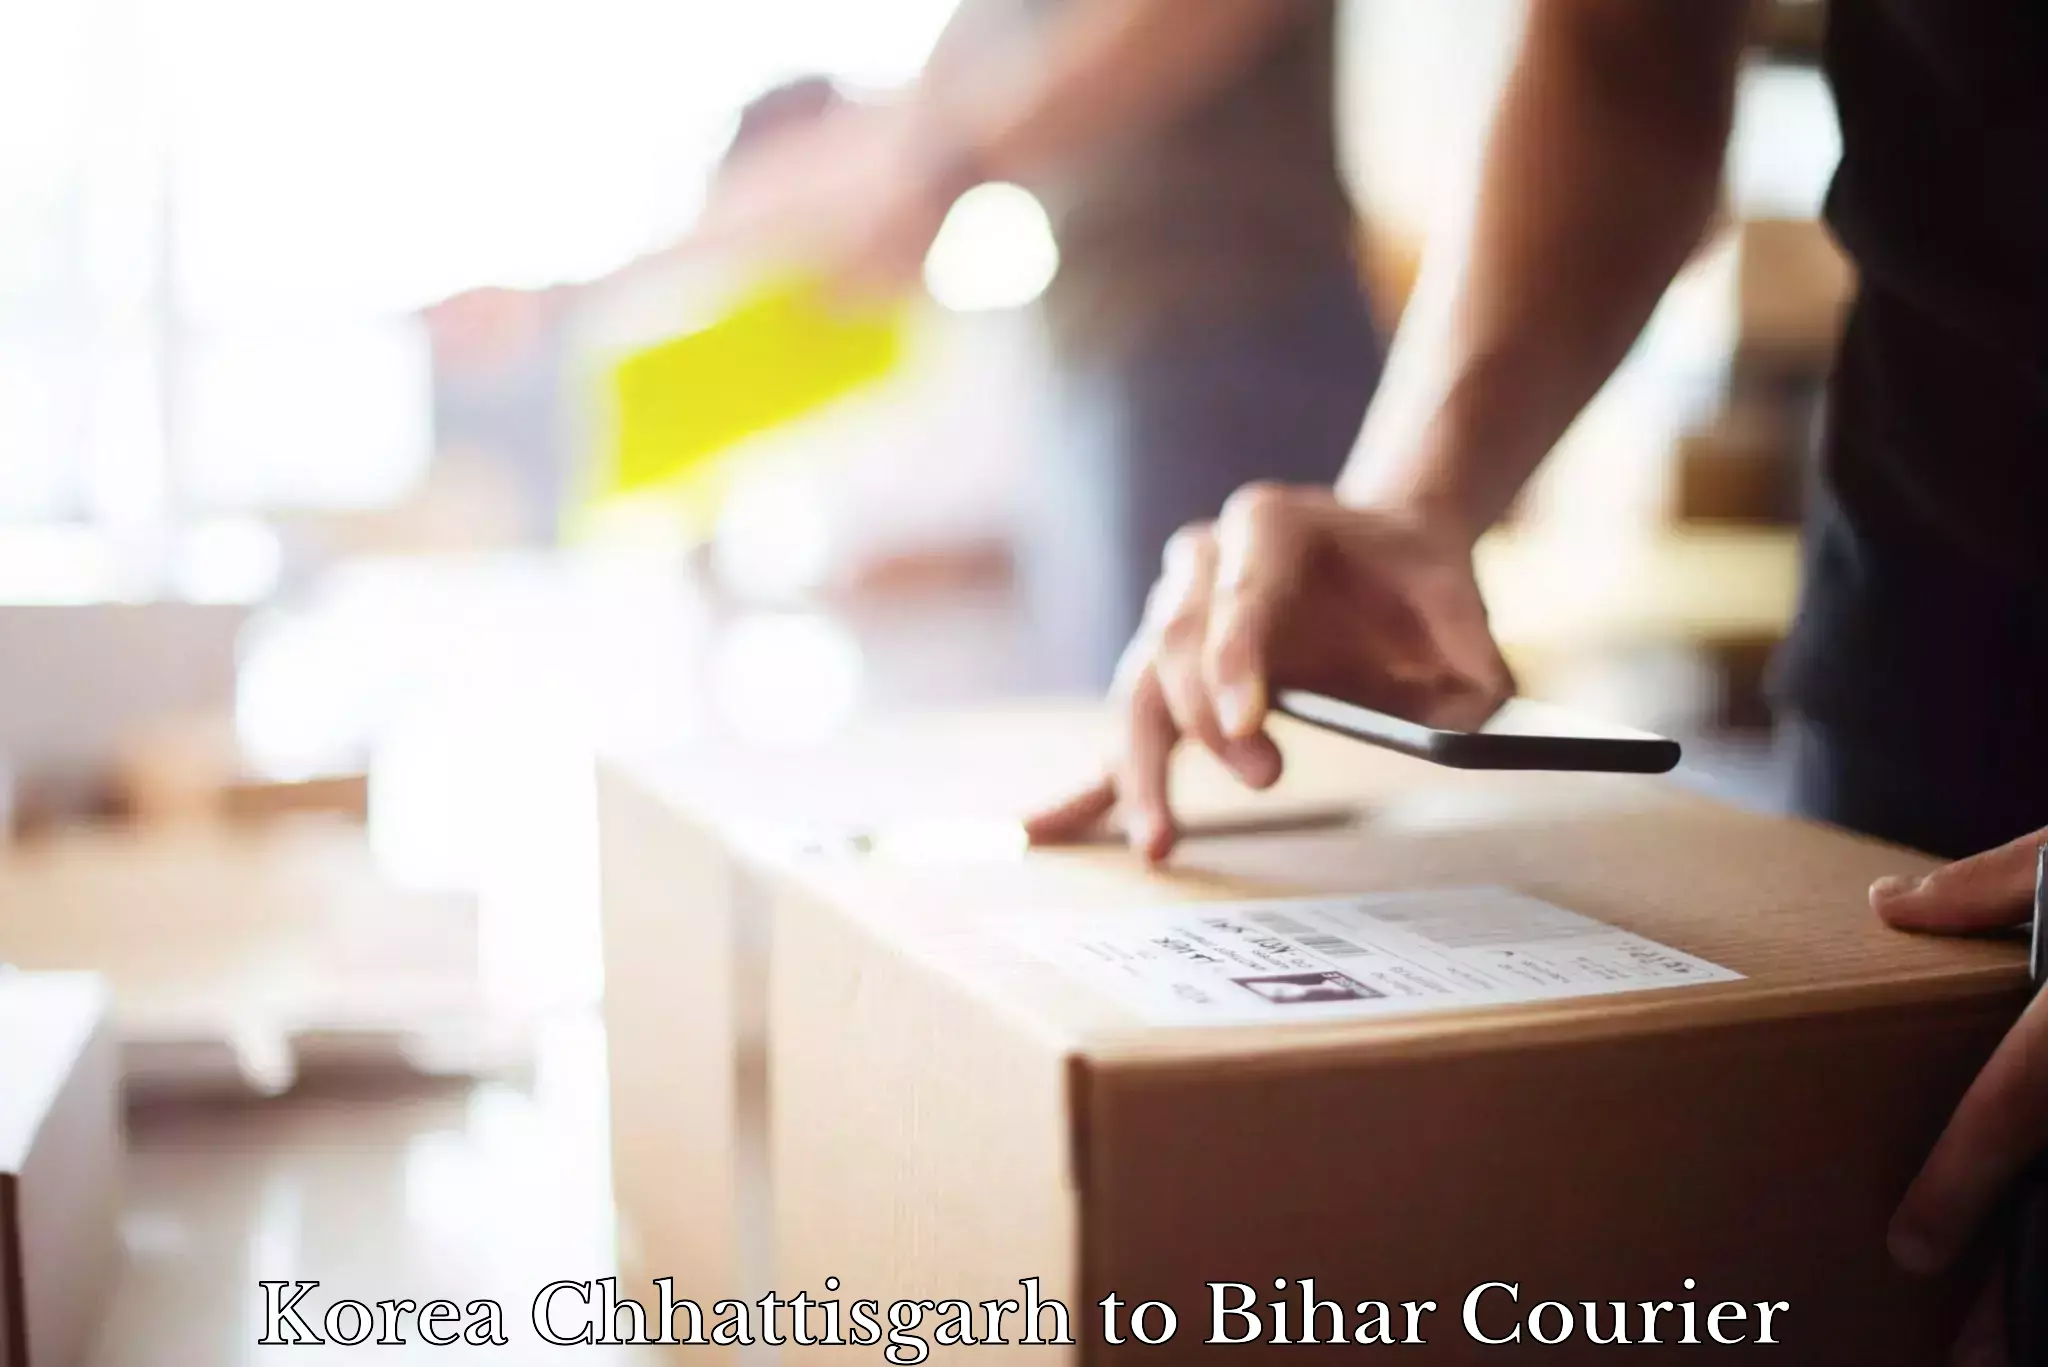 Overnight delivery services Korea Chhattisgarh to Bihar